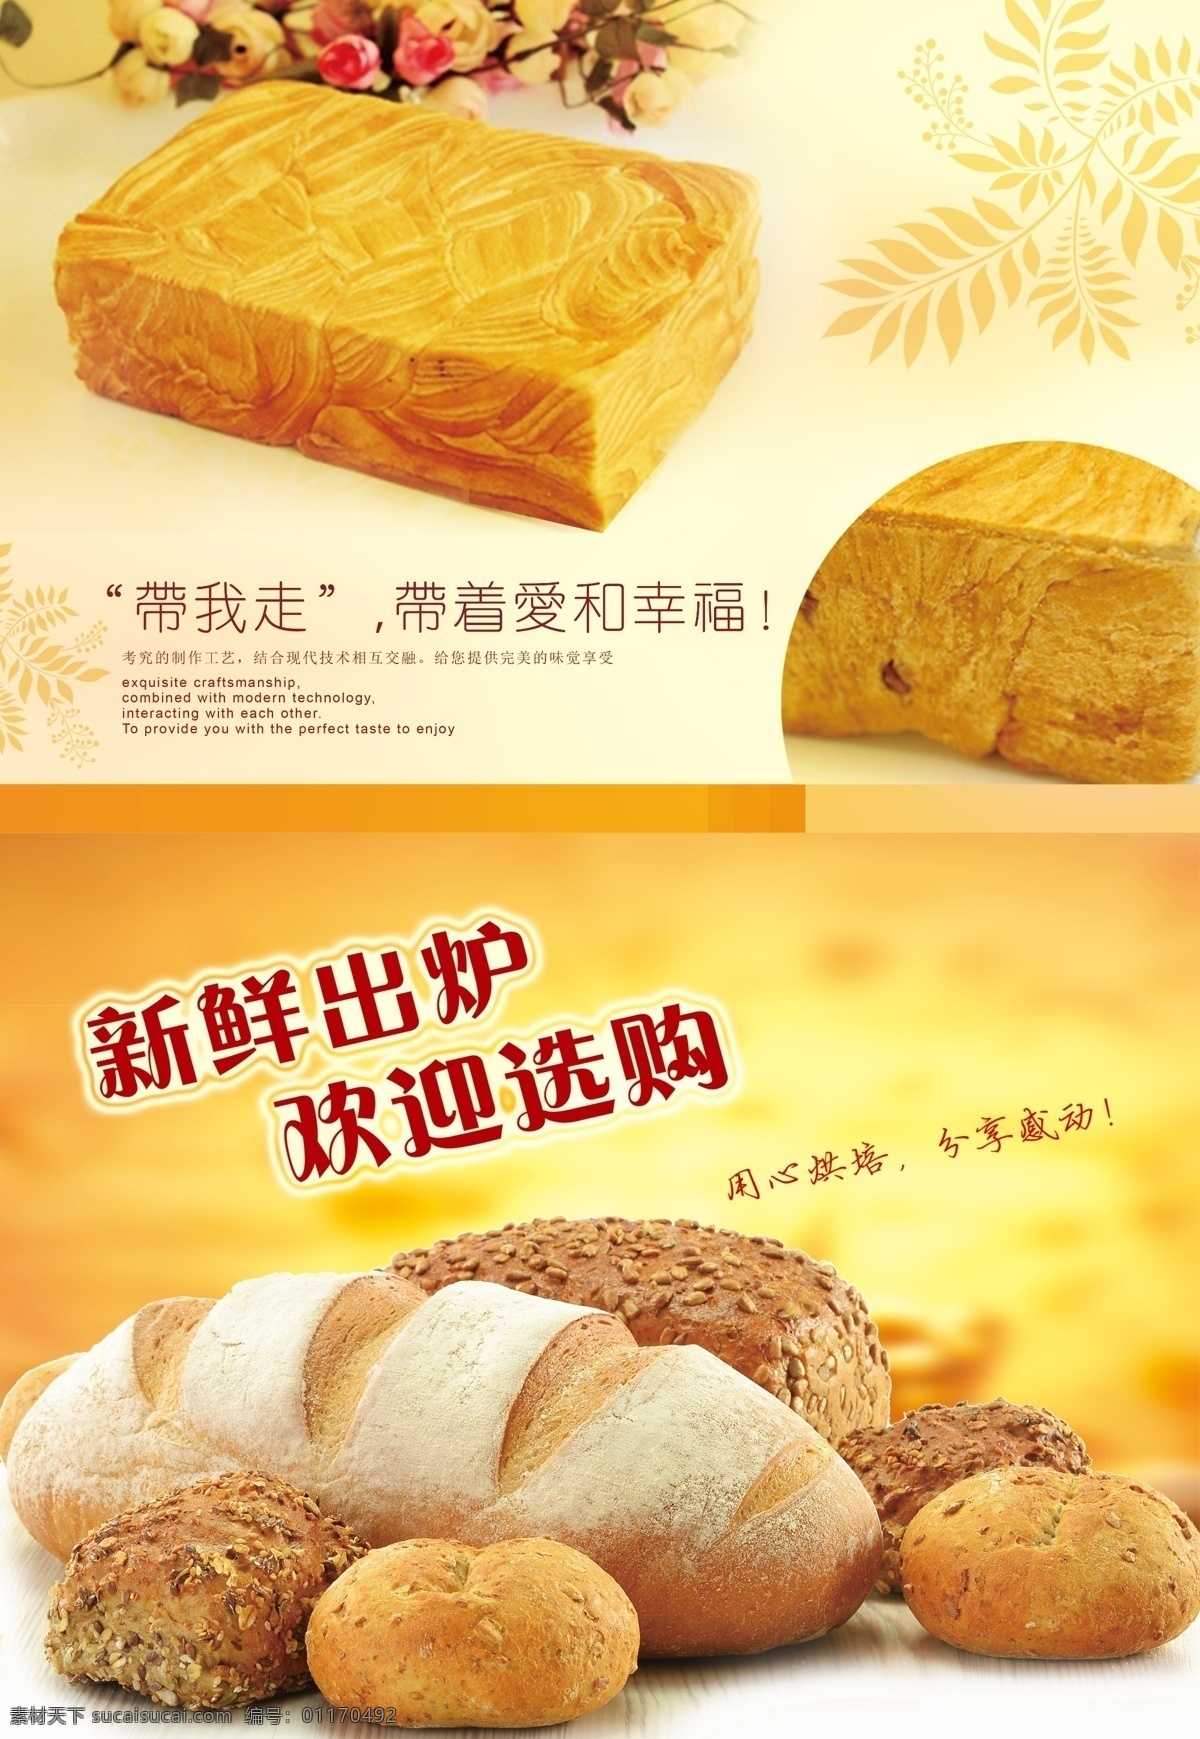 蛋糕海报 蛋糕 金砖面包 海报 提拉米苏 广告 平面设计